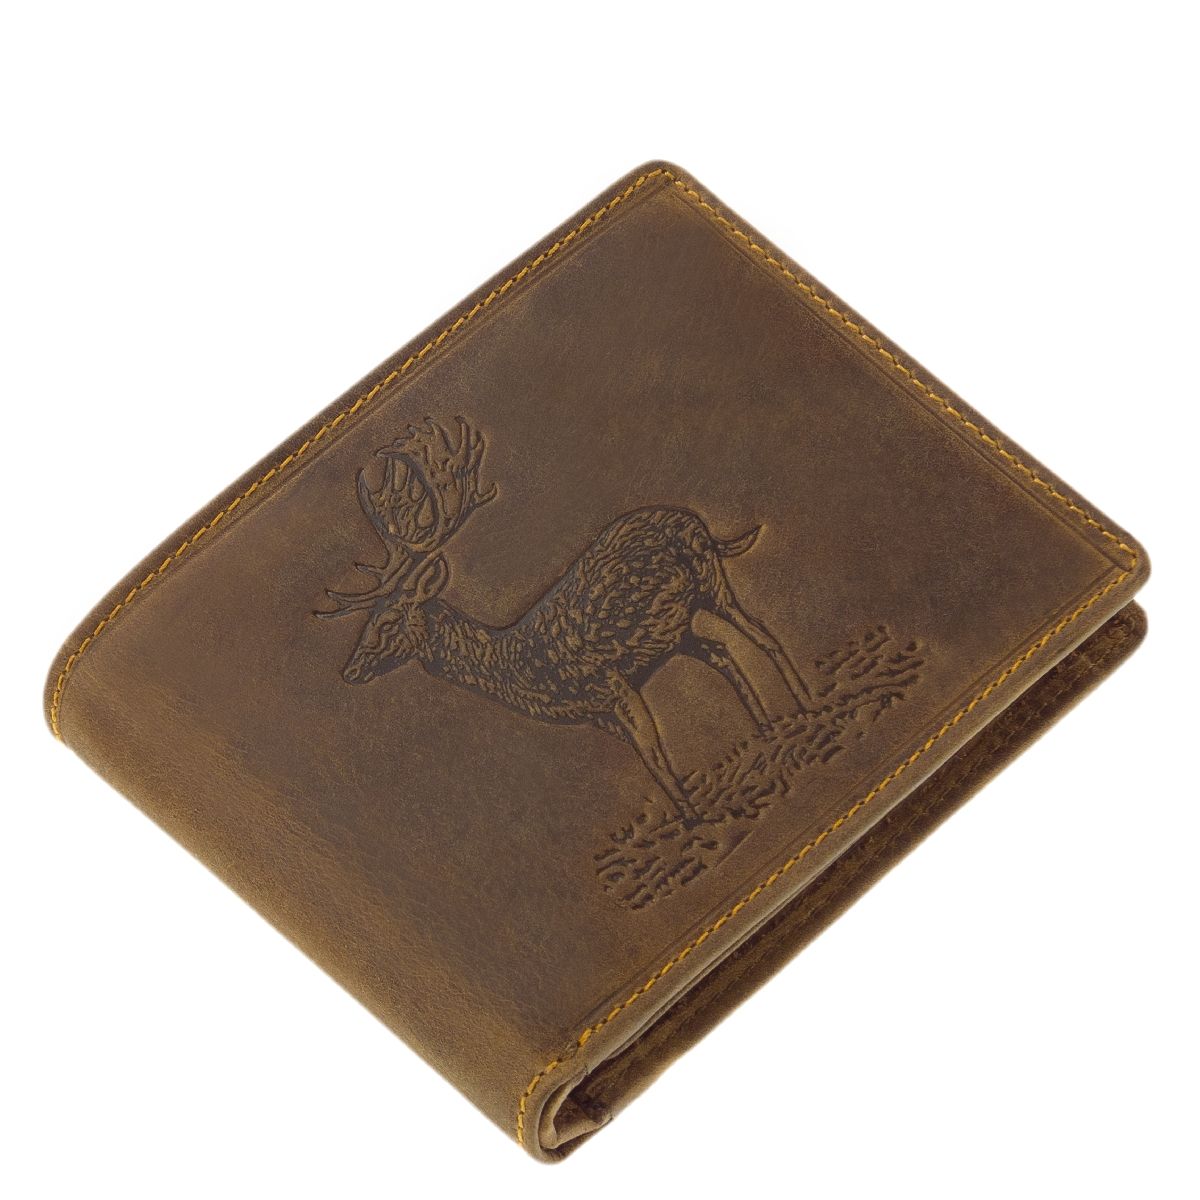 Geschenke für Jäger - Geldbörse aus hochwertigem Büffelleder mit Jagdmotiv Damhirsch